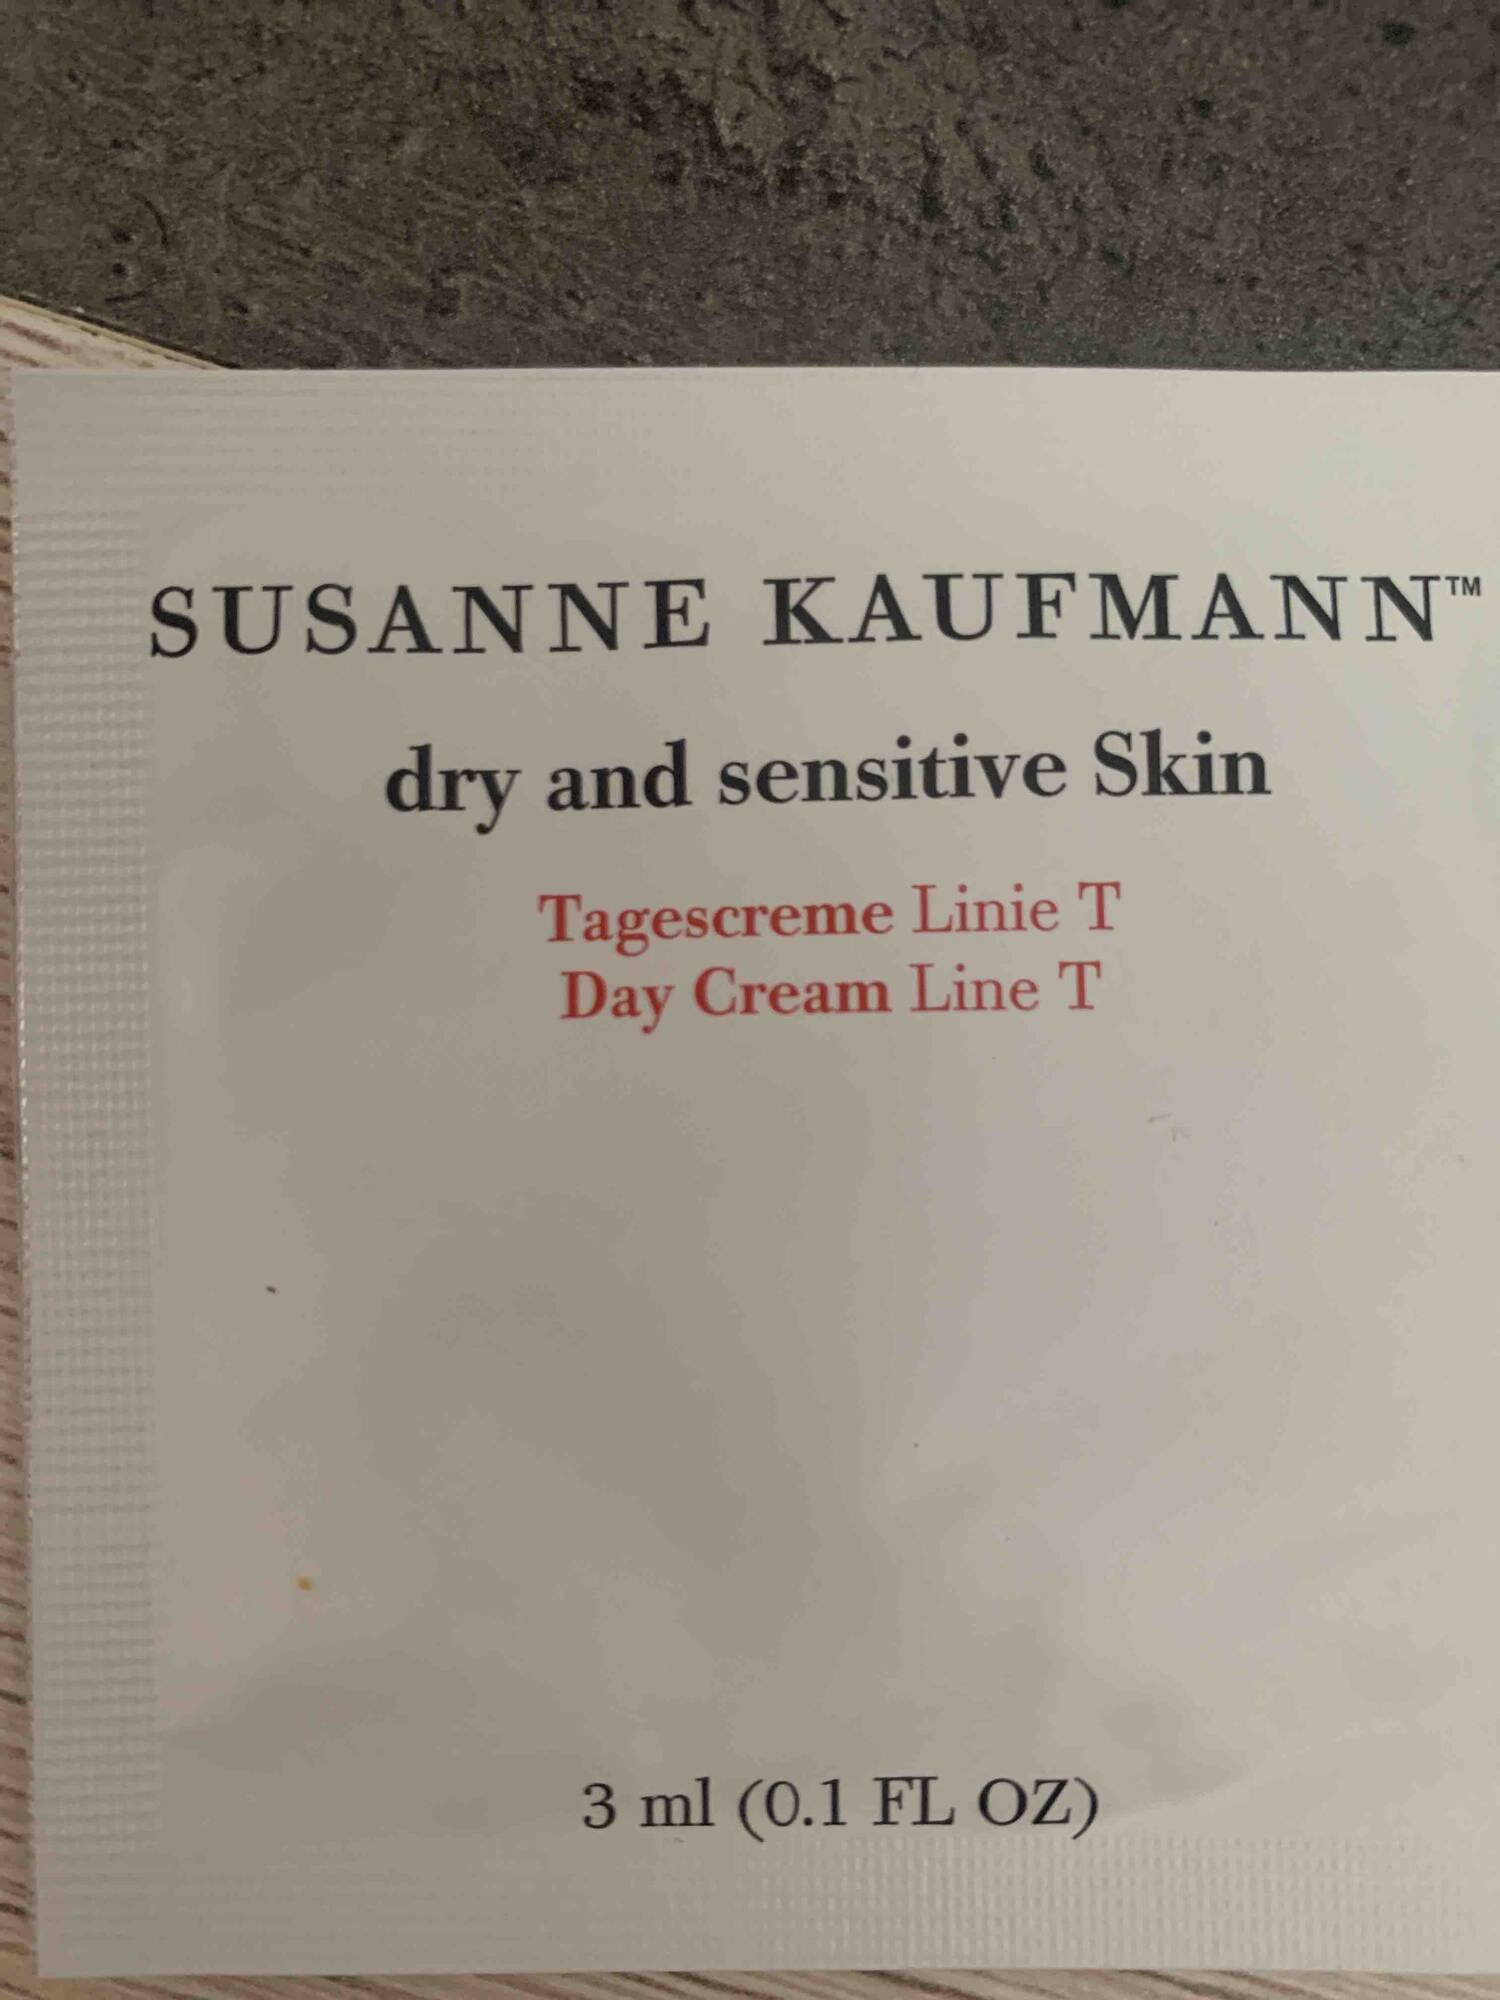 SUSANNE KAUFMANN - Day cream line T